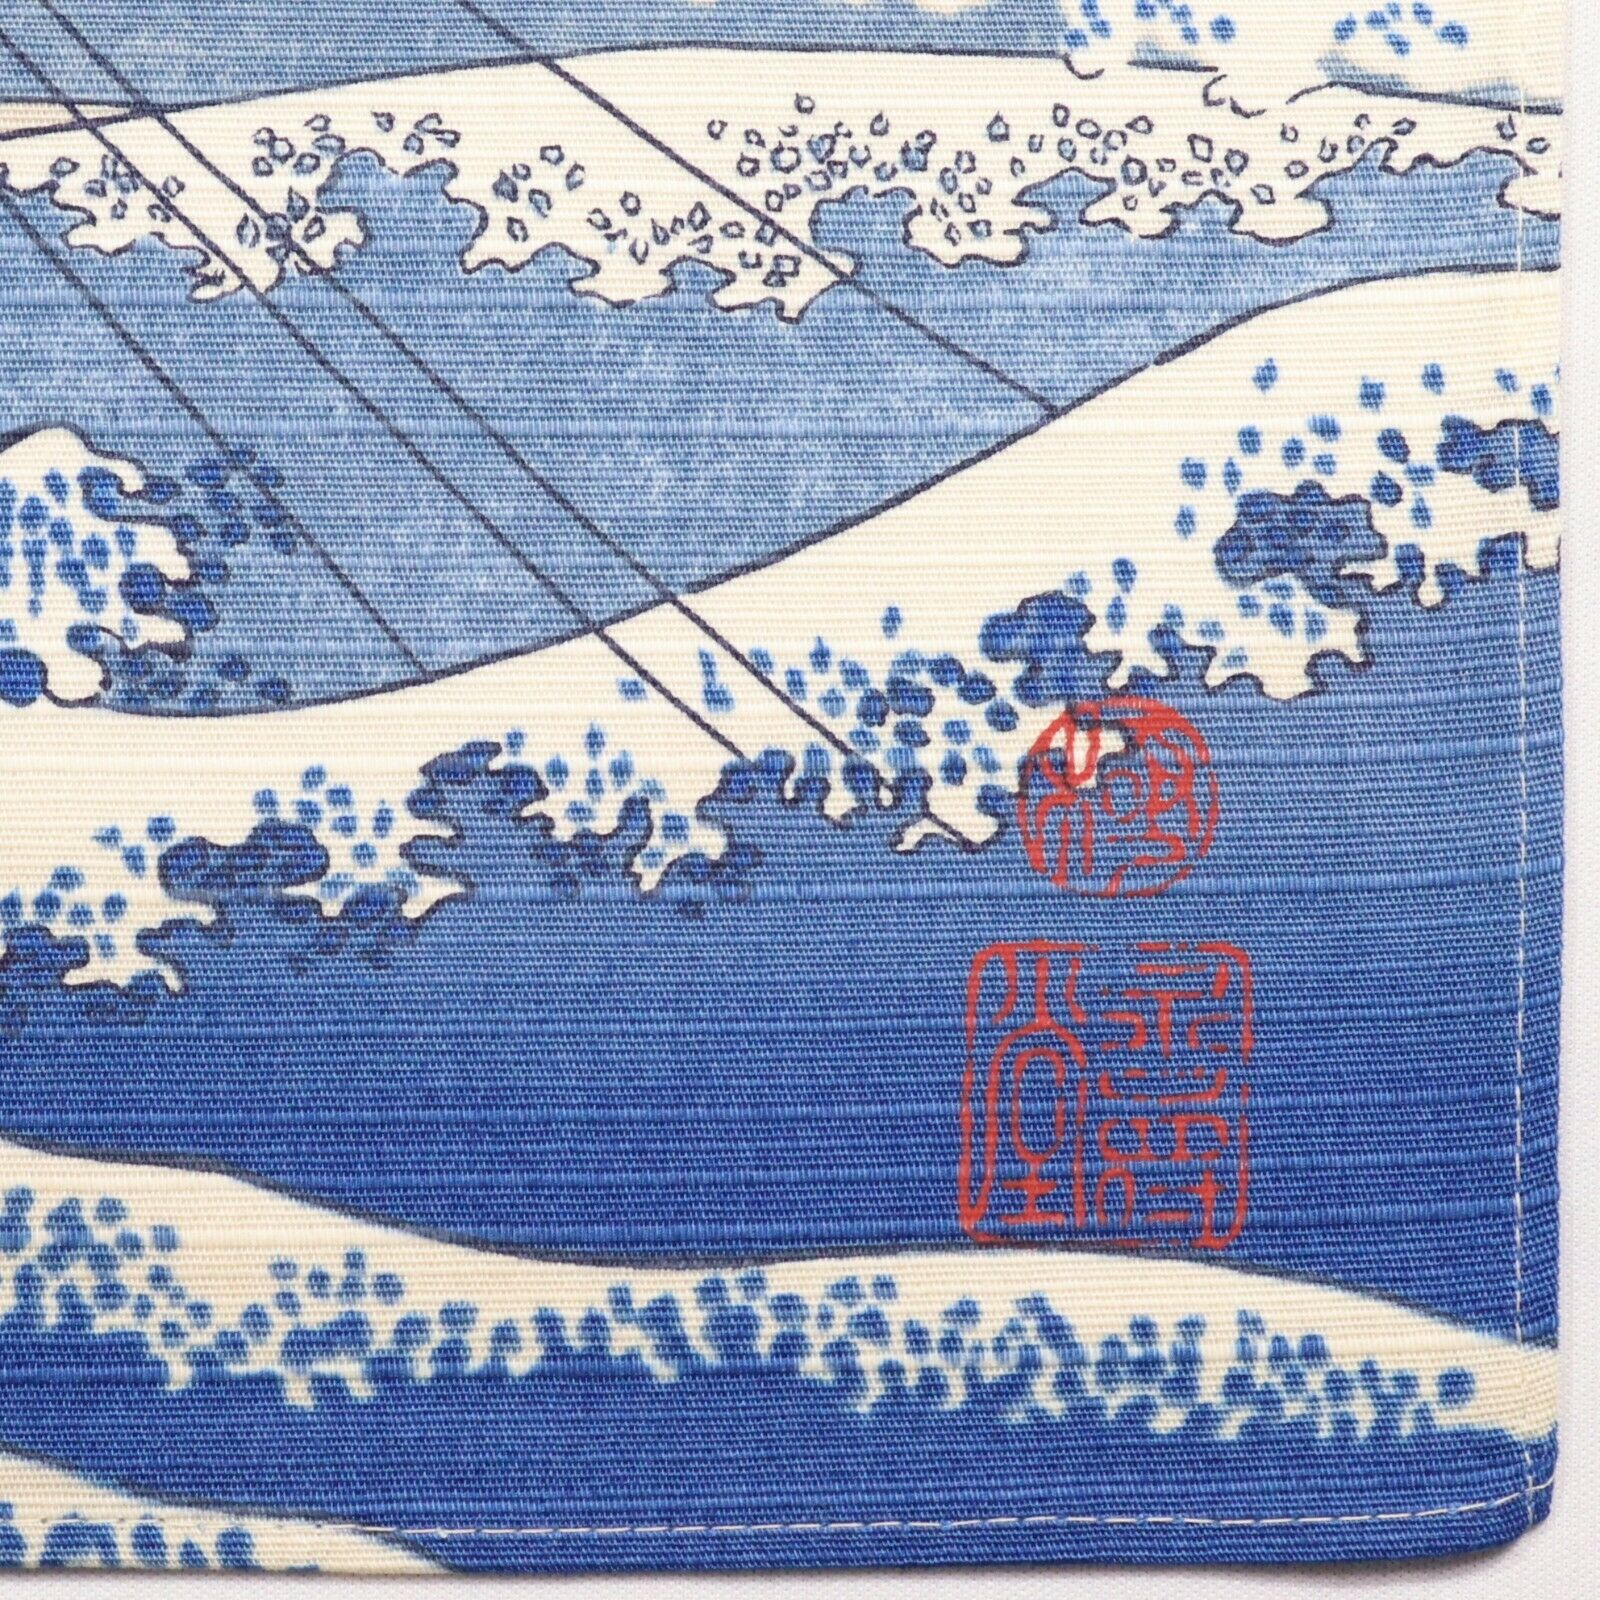 Fuji Koshu Kajikazawa Kyoto Japanese Furoshiki Wrapping Cloth Hokusai Ukiyoe Mt